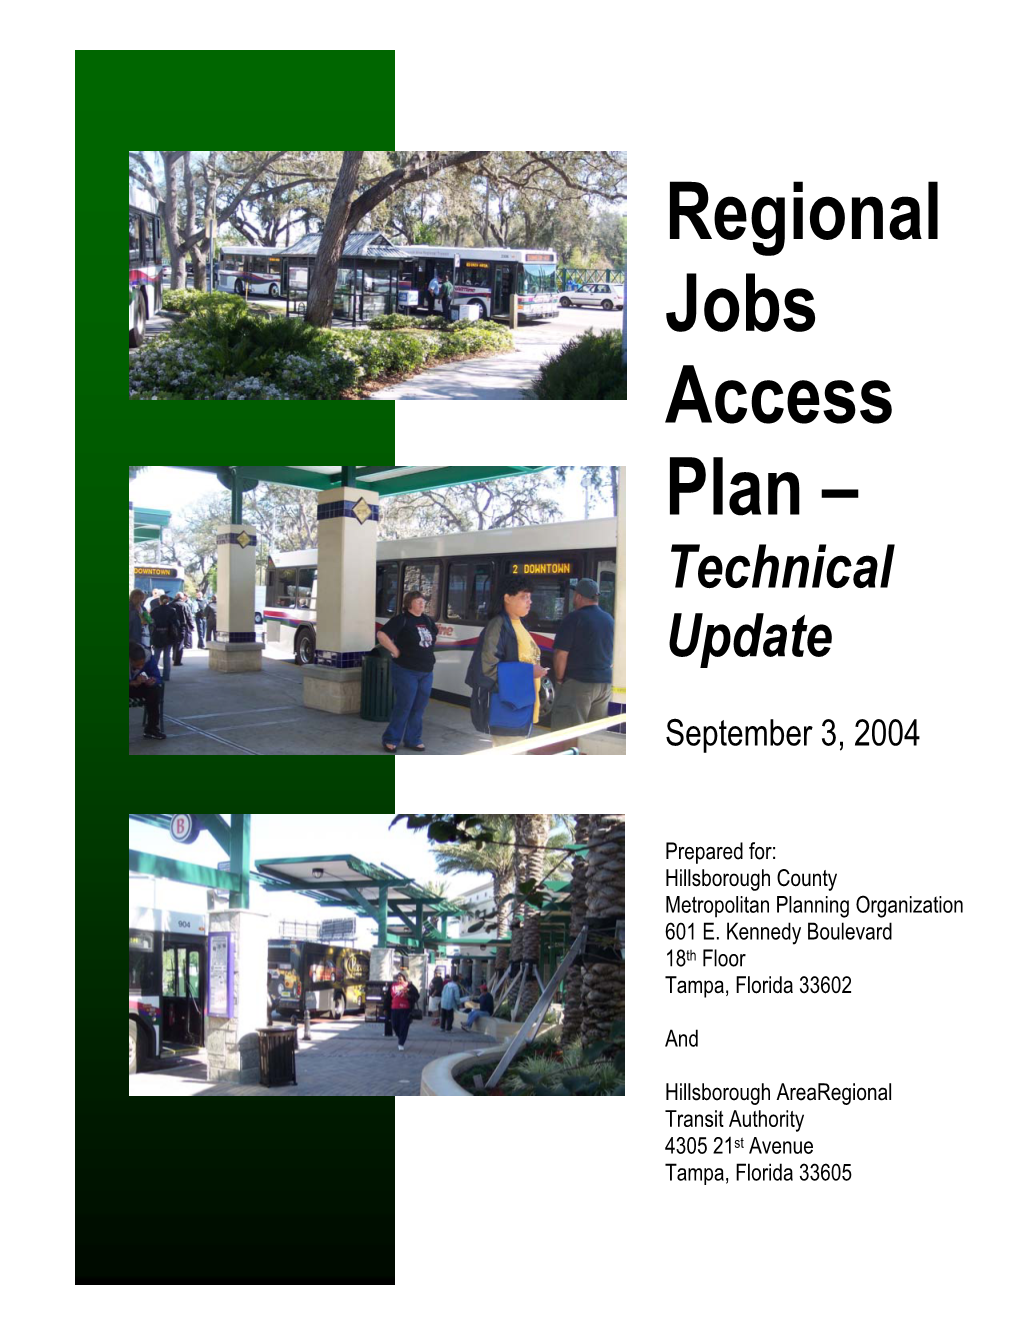 Regional Jobs Access Plan – Technical Update